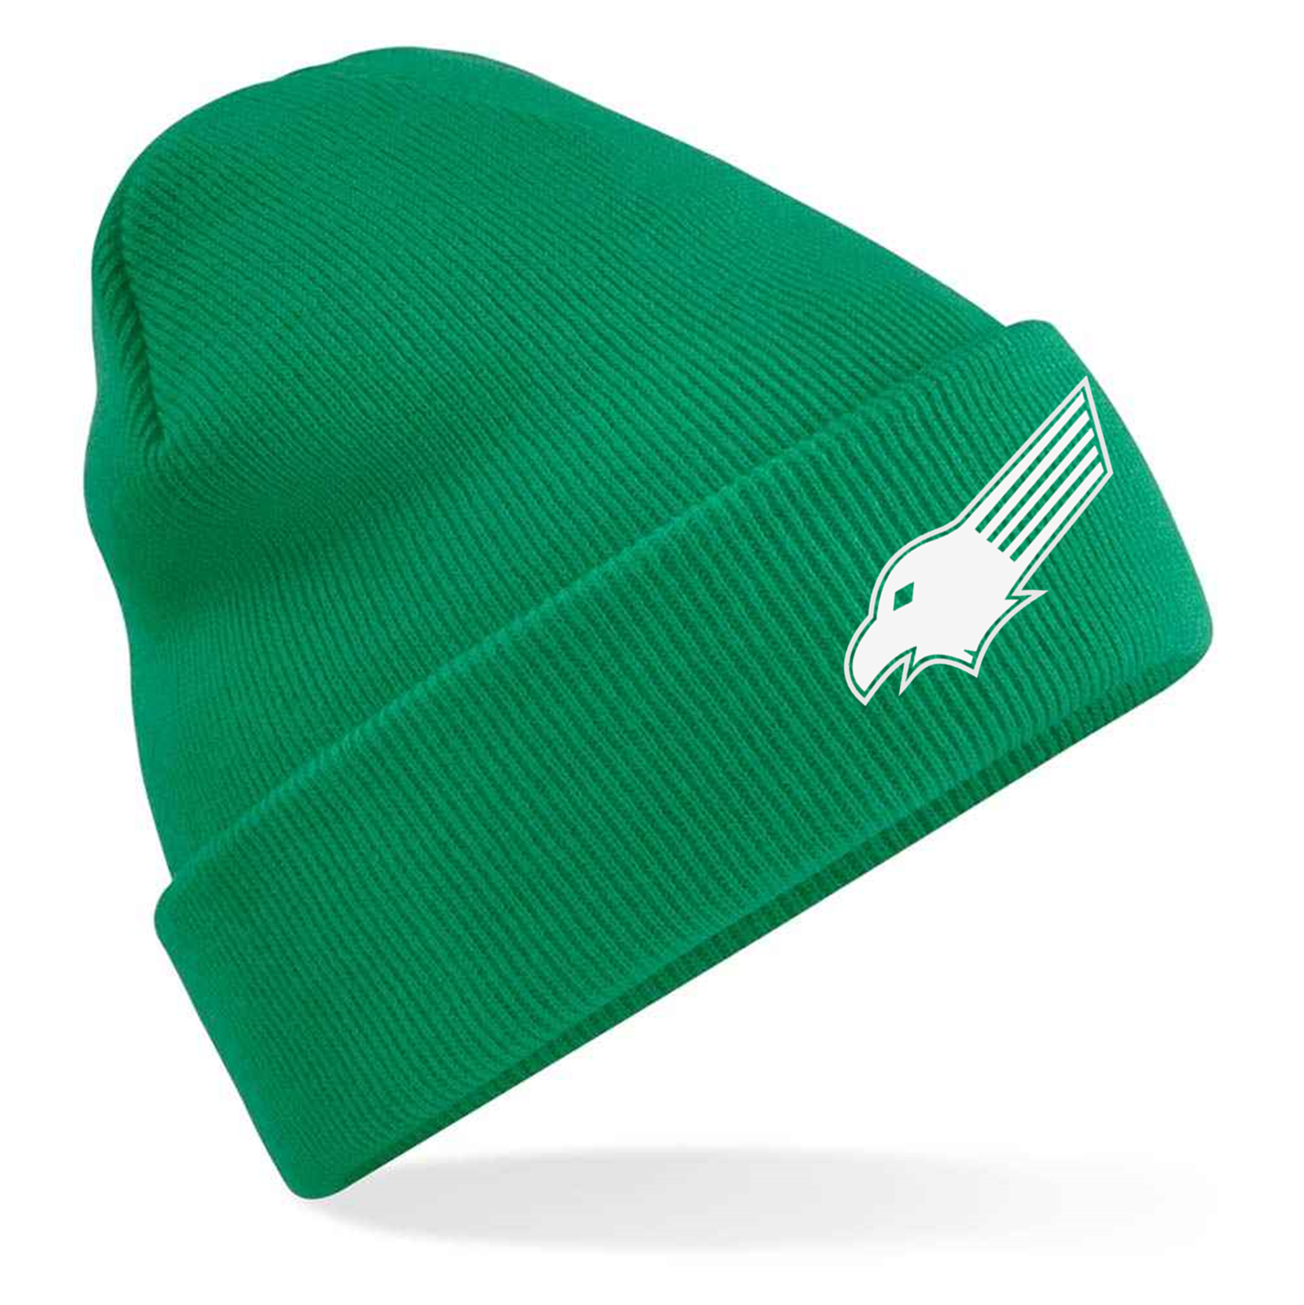 Kewford Eagles Beanie Hats - Green